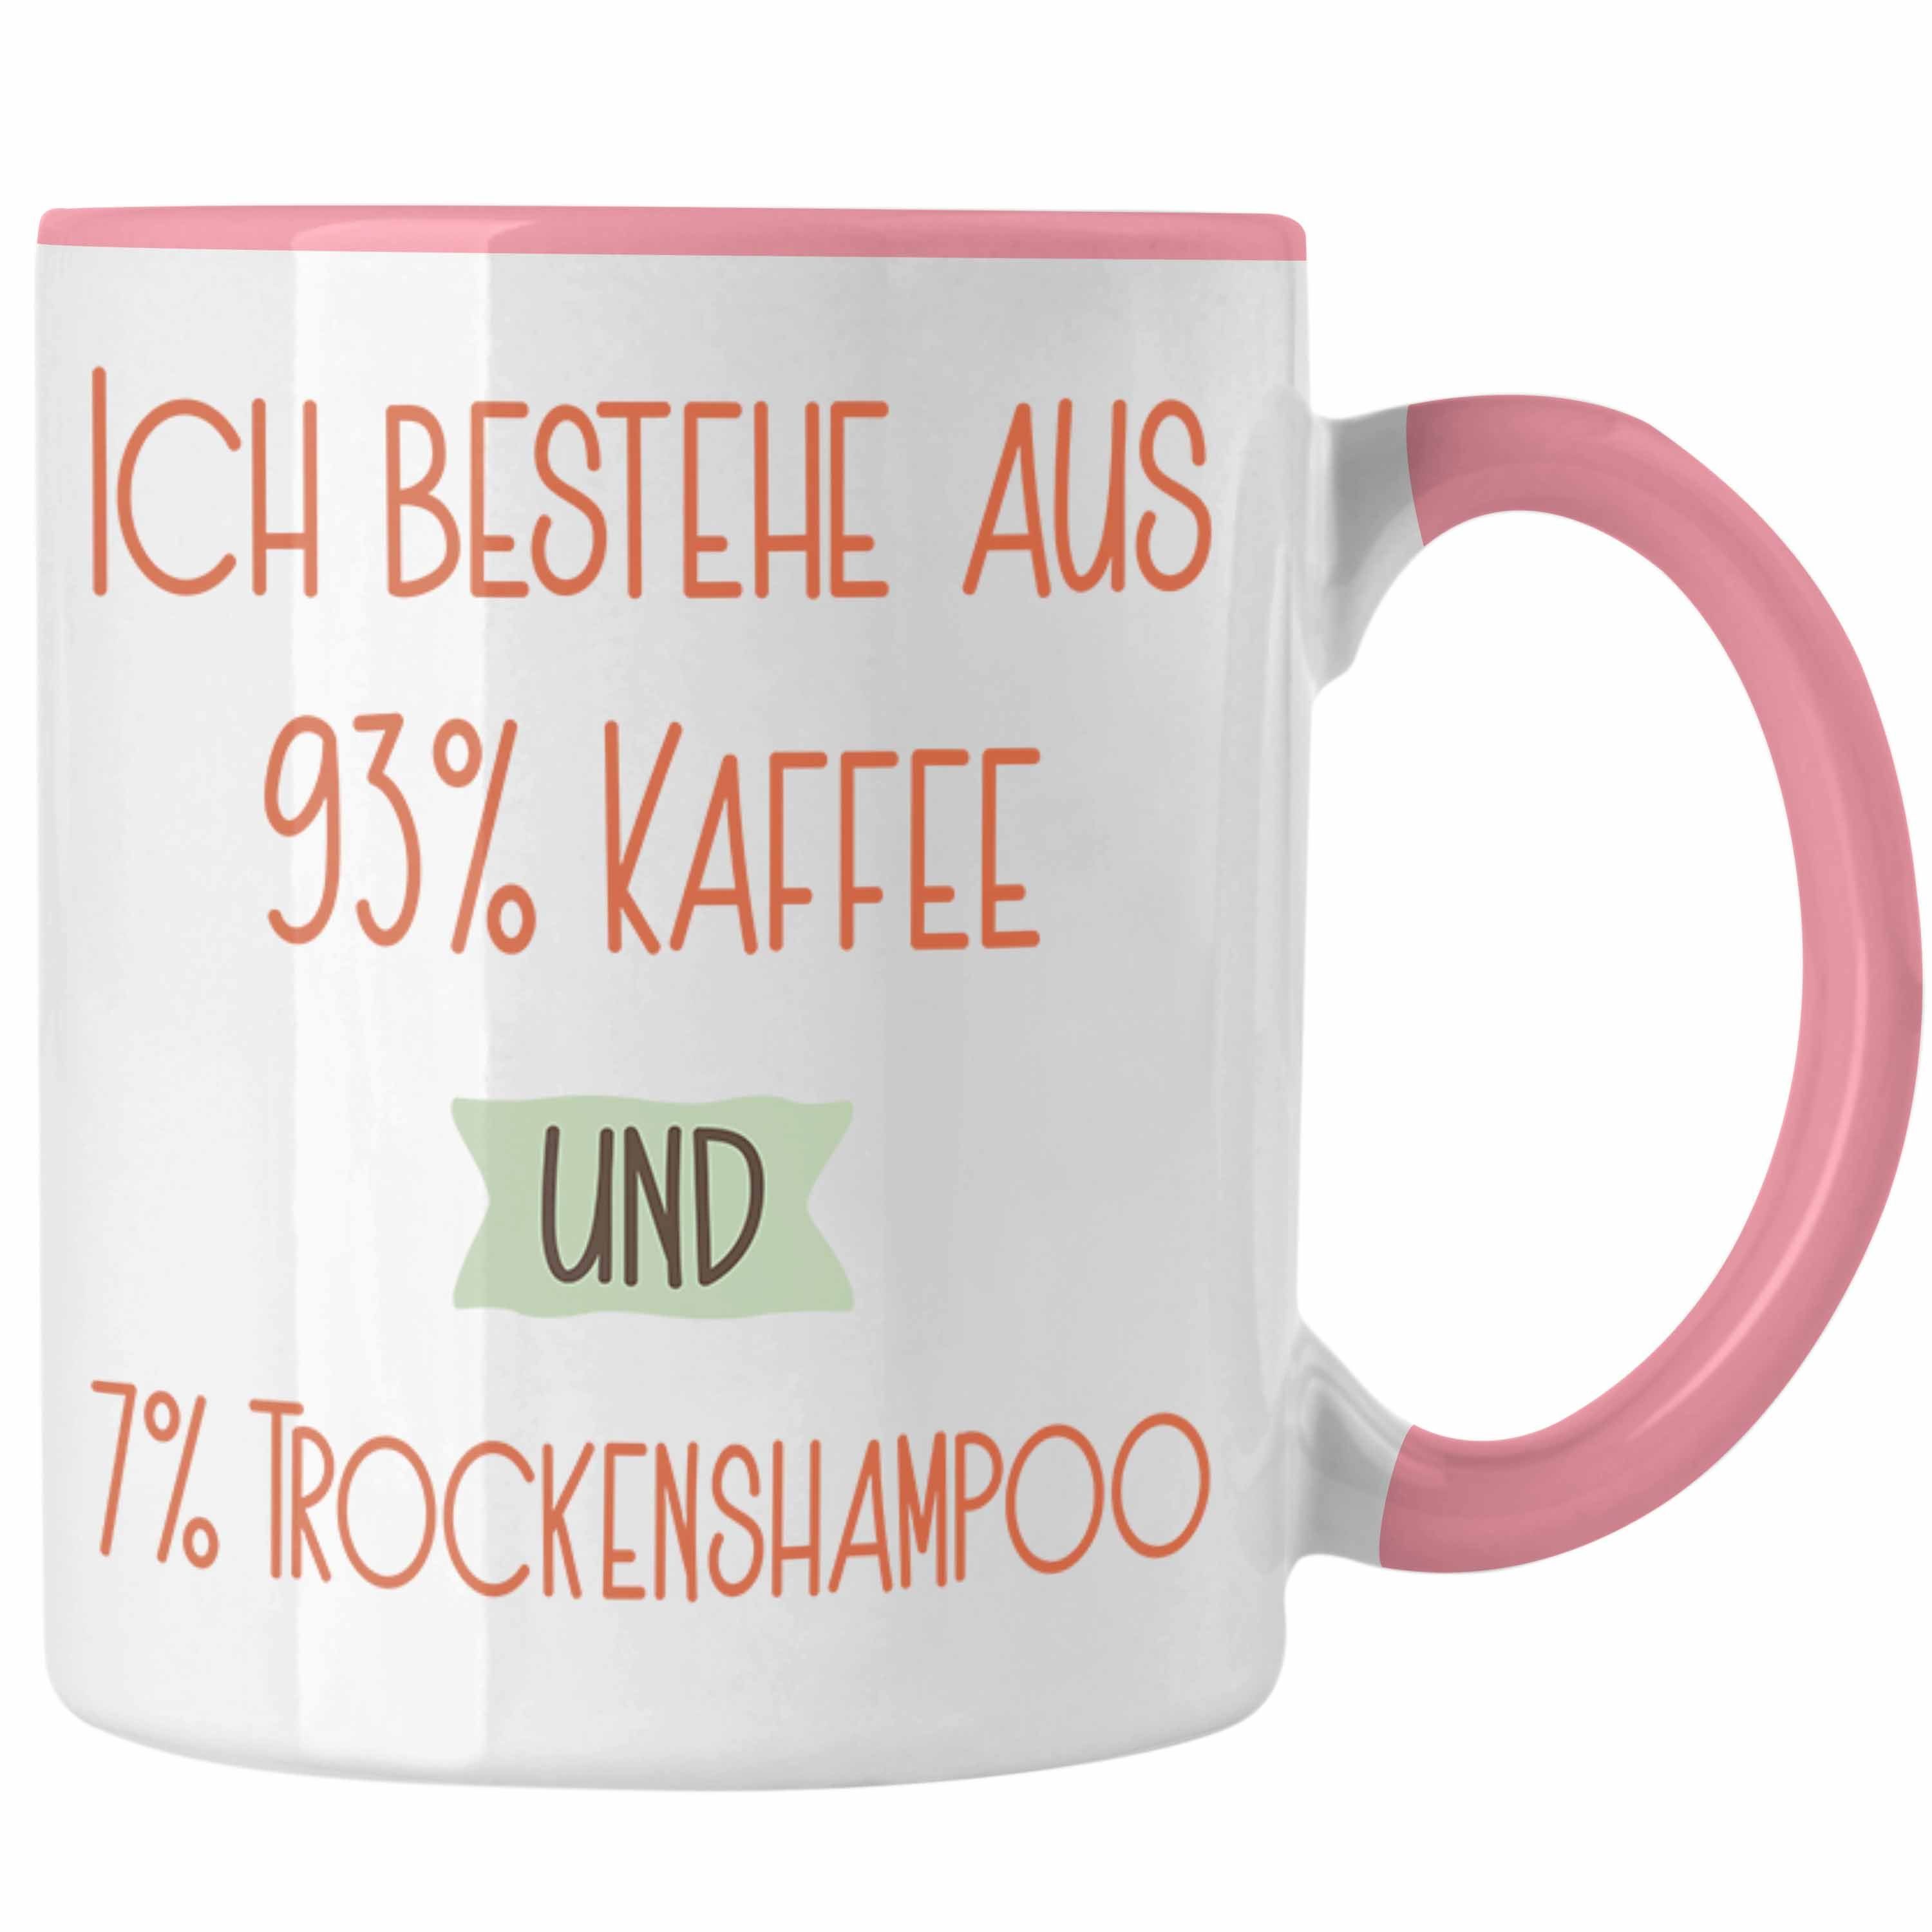 Trendation Tasse 93% Kaffee und 7% Trockenshampoo Tasse Geschenk Lustiger Spruch Für Ko Rosa